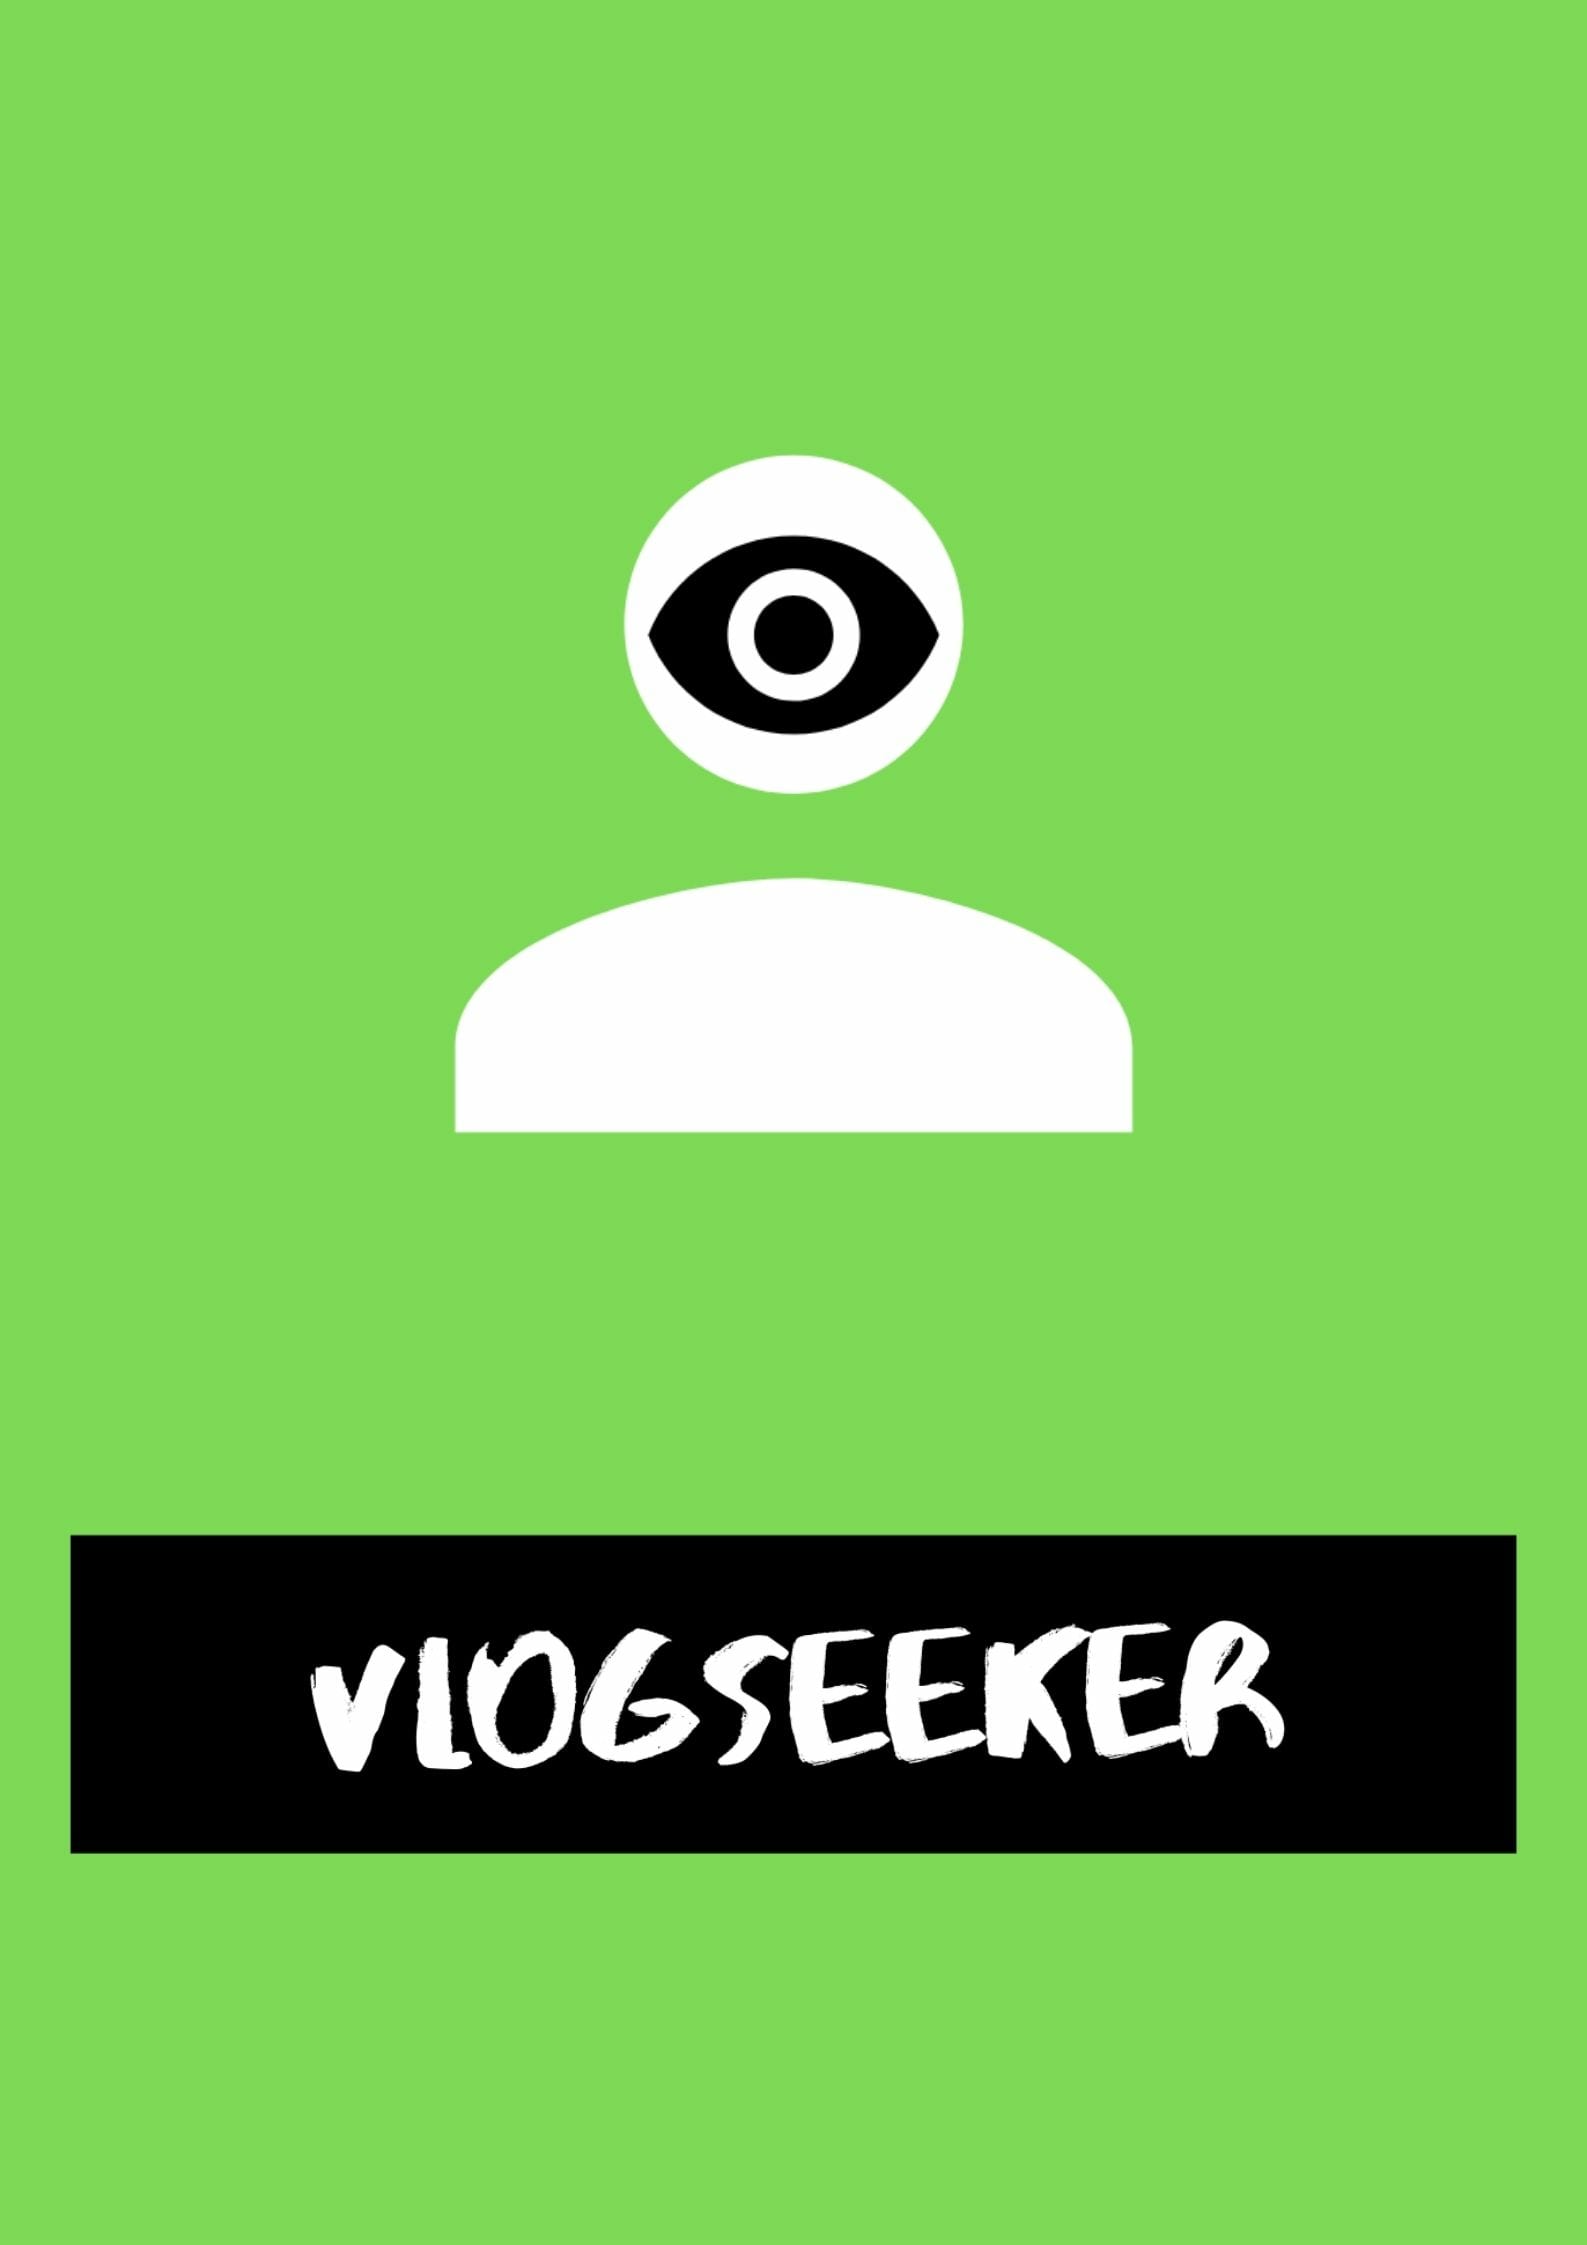 VlogSeeker